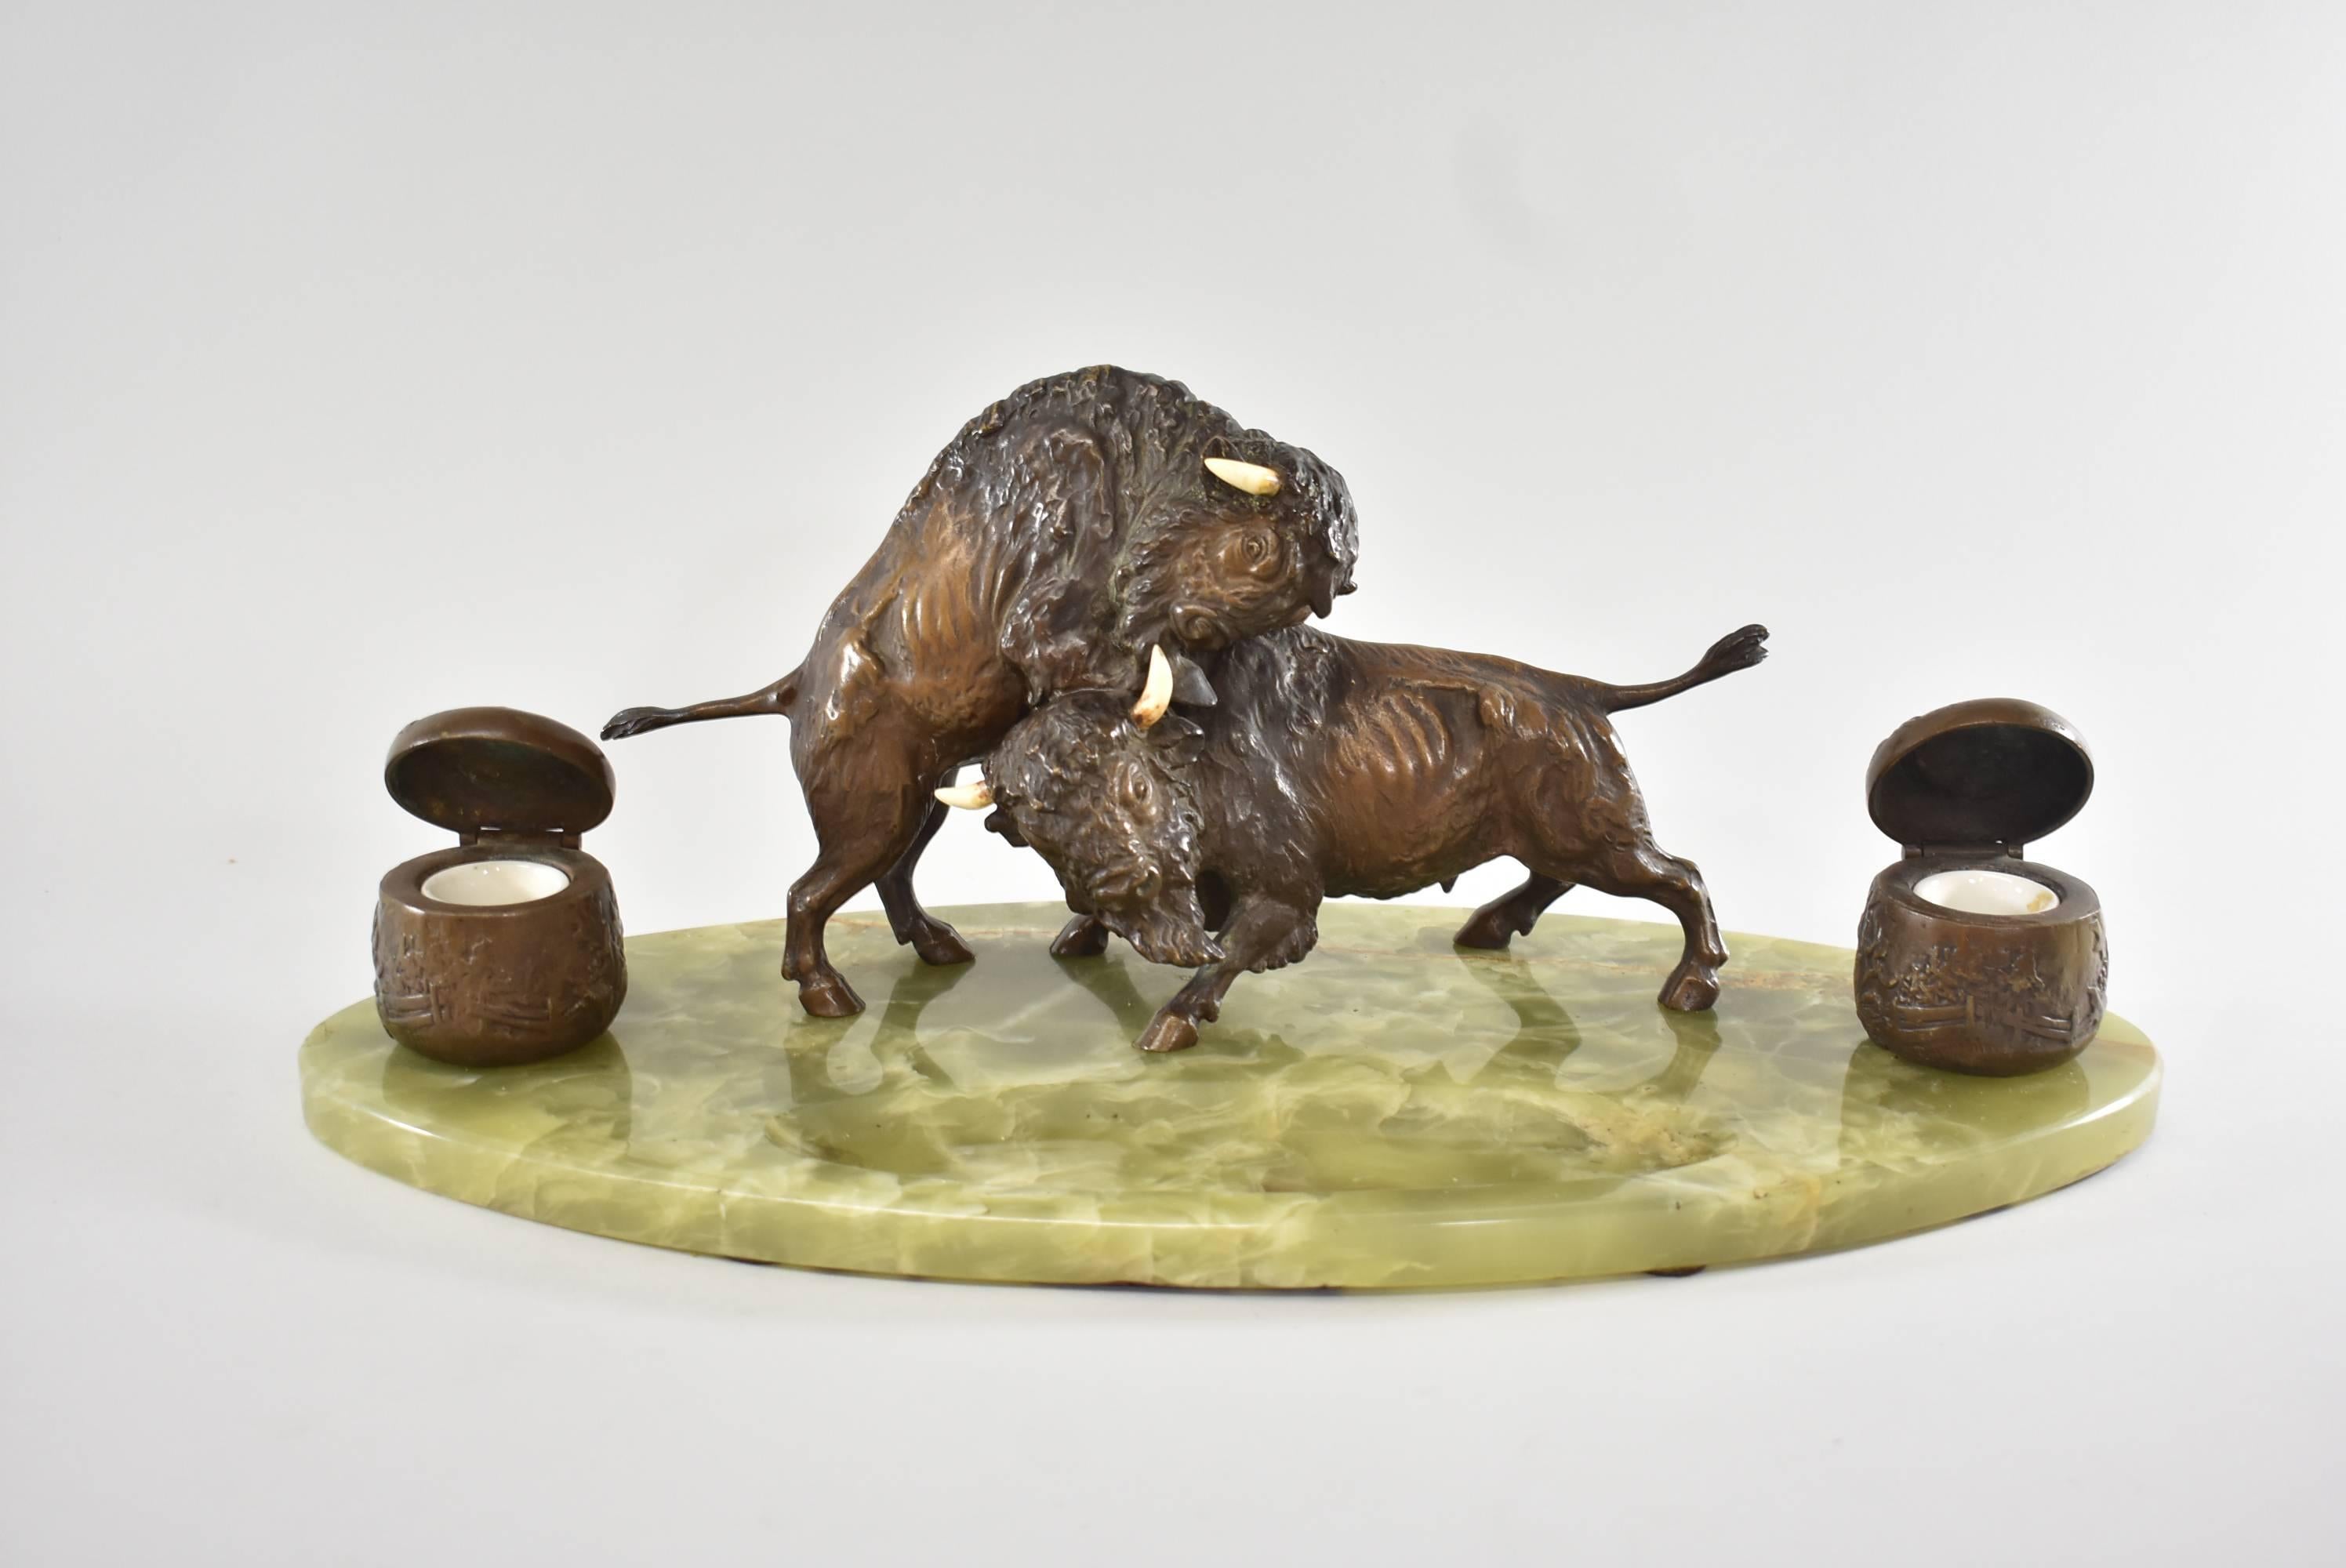 Western-Tintenfass mit zwei gegossenen, sehr detaillierten, kämpfenden Bonze-Büffeln auf einem ovalen Sockel aus grünem Onyx mit herausgearbeiteter Federauflage. Die Tintenfässer sind mit einer eingezäunten ländlichen Szene geprägt und enthalten